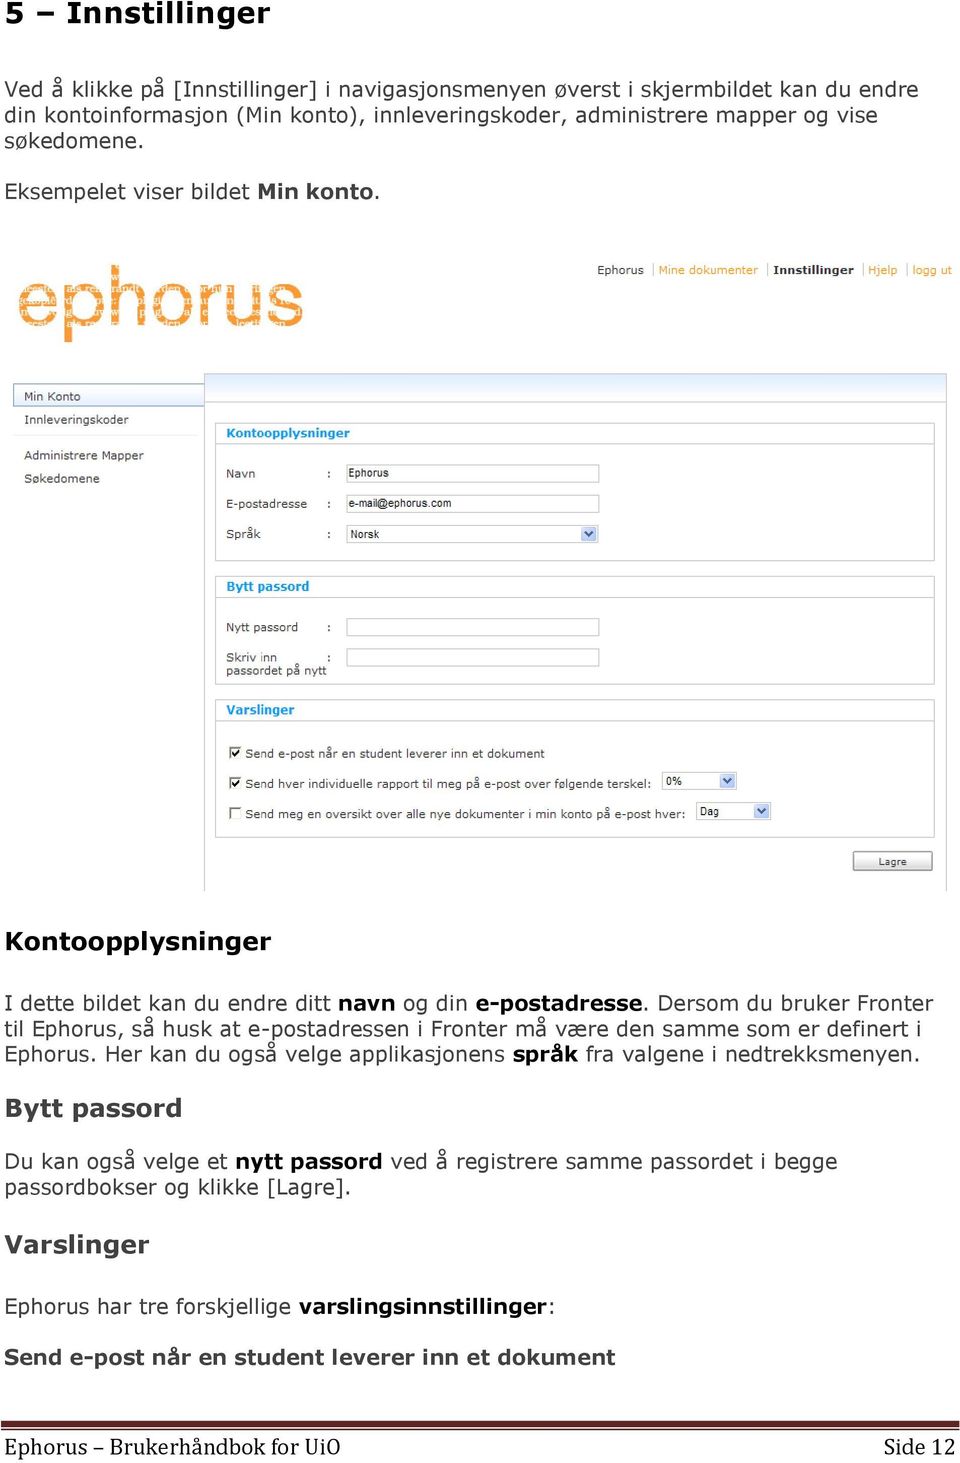 Dersom du bruker Fronter til Ephorus, så husk at e-postadressen i Fronter må være den samme som er definert i Ephorus. Her kan du også velge applikasjonens språk fra valgene i nedtrekksmenyen.